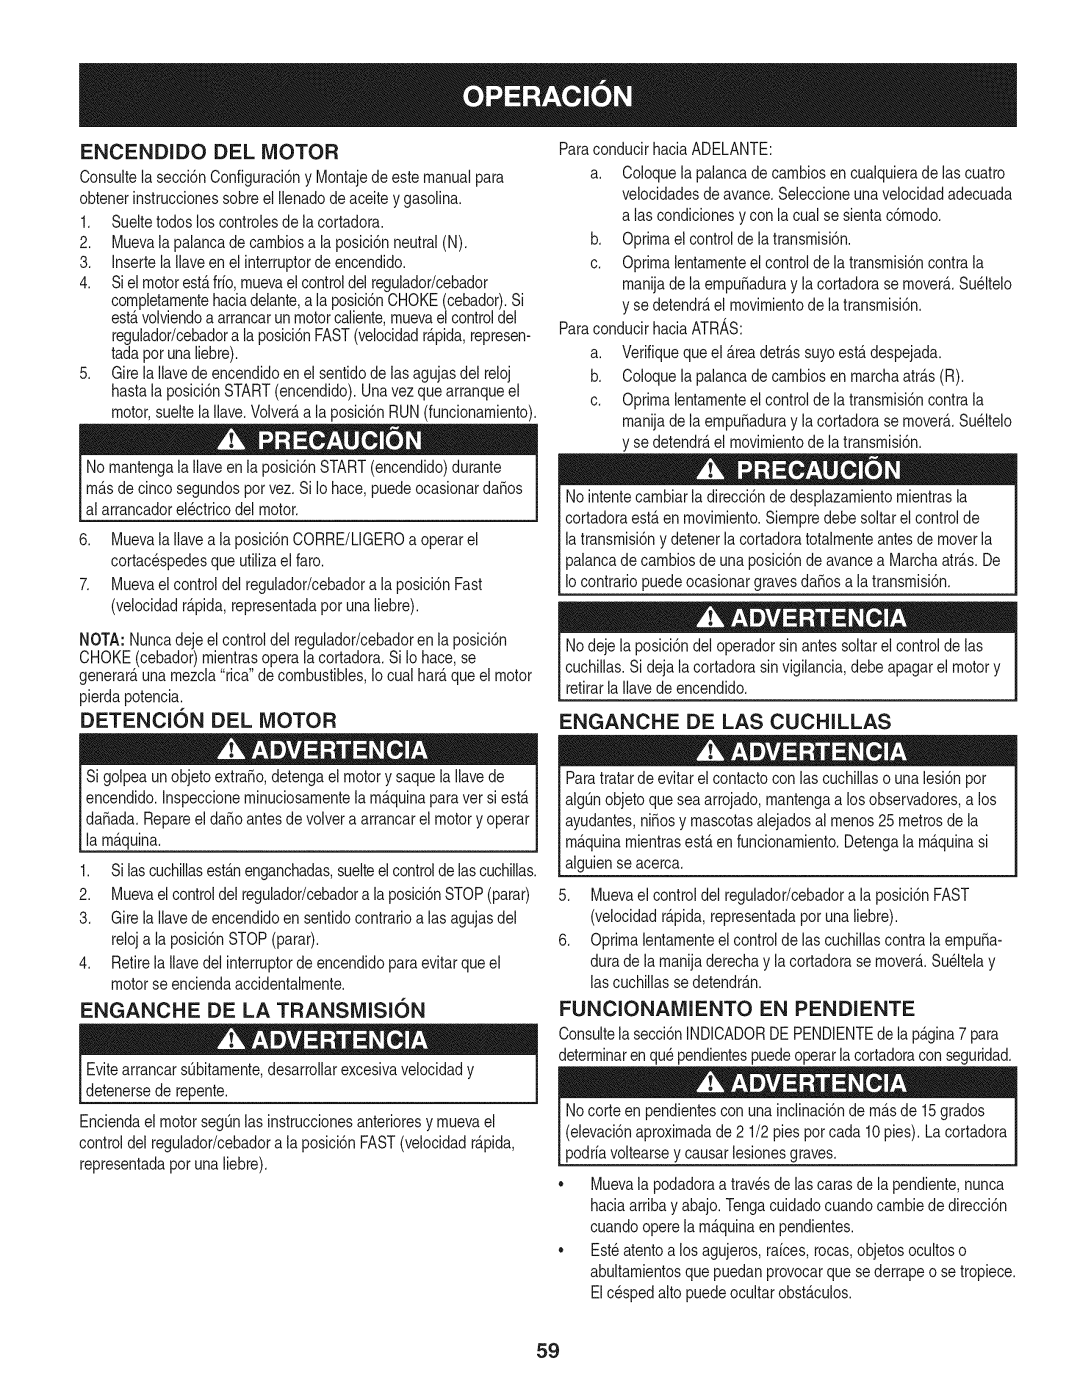 Craftsman 247.889980 manual Detencion Del Motor, Enganche De Las Cuchillas, ENGANCHE DE LA TRANSMISI6N, Funcionamiento 